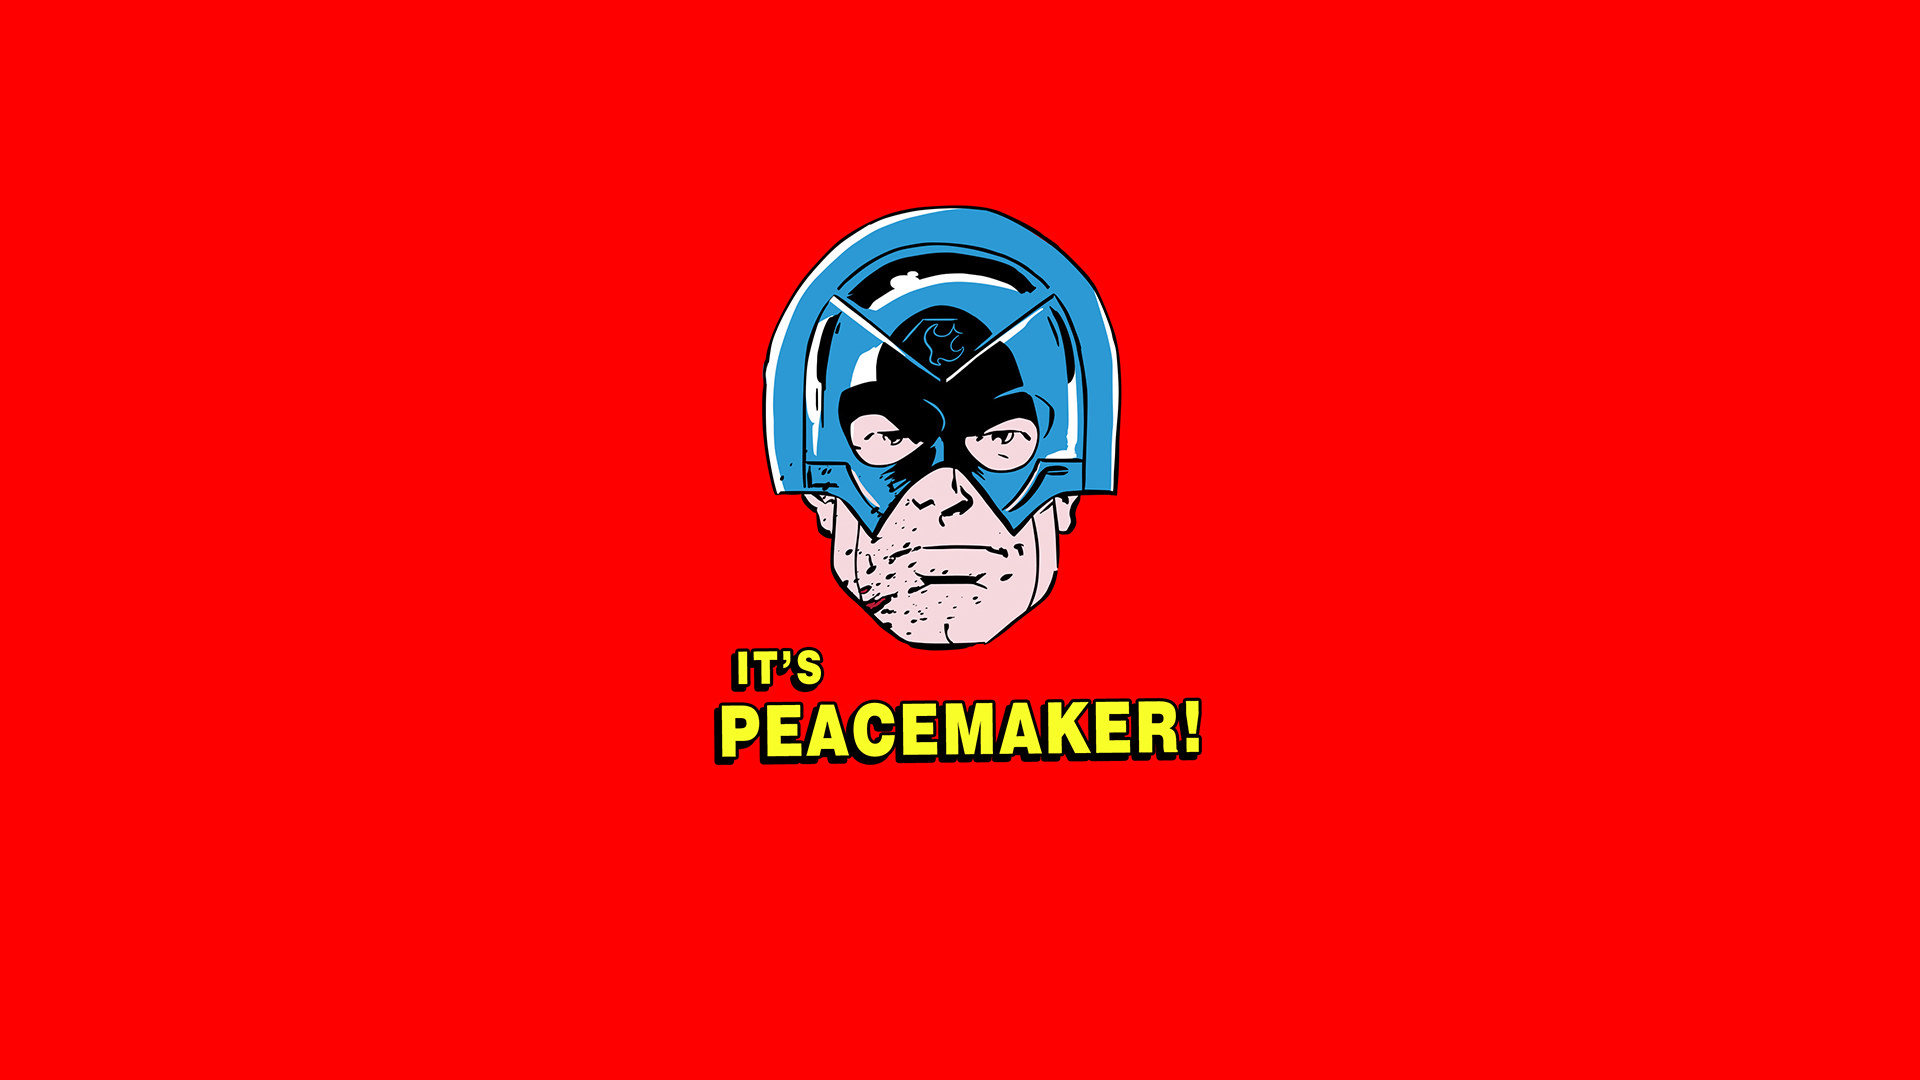 جیمز گان از شروع فیلمبرداری سریال Peacemaker خبر داد